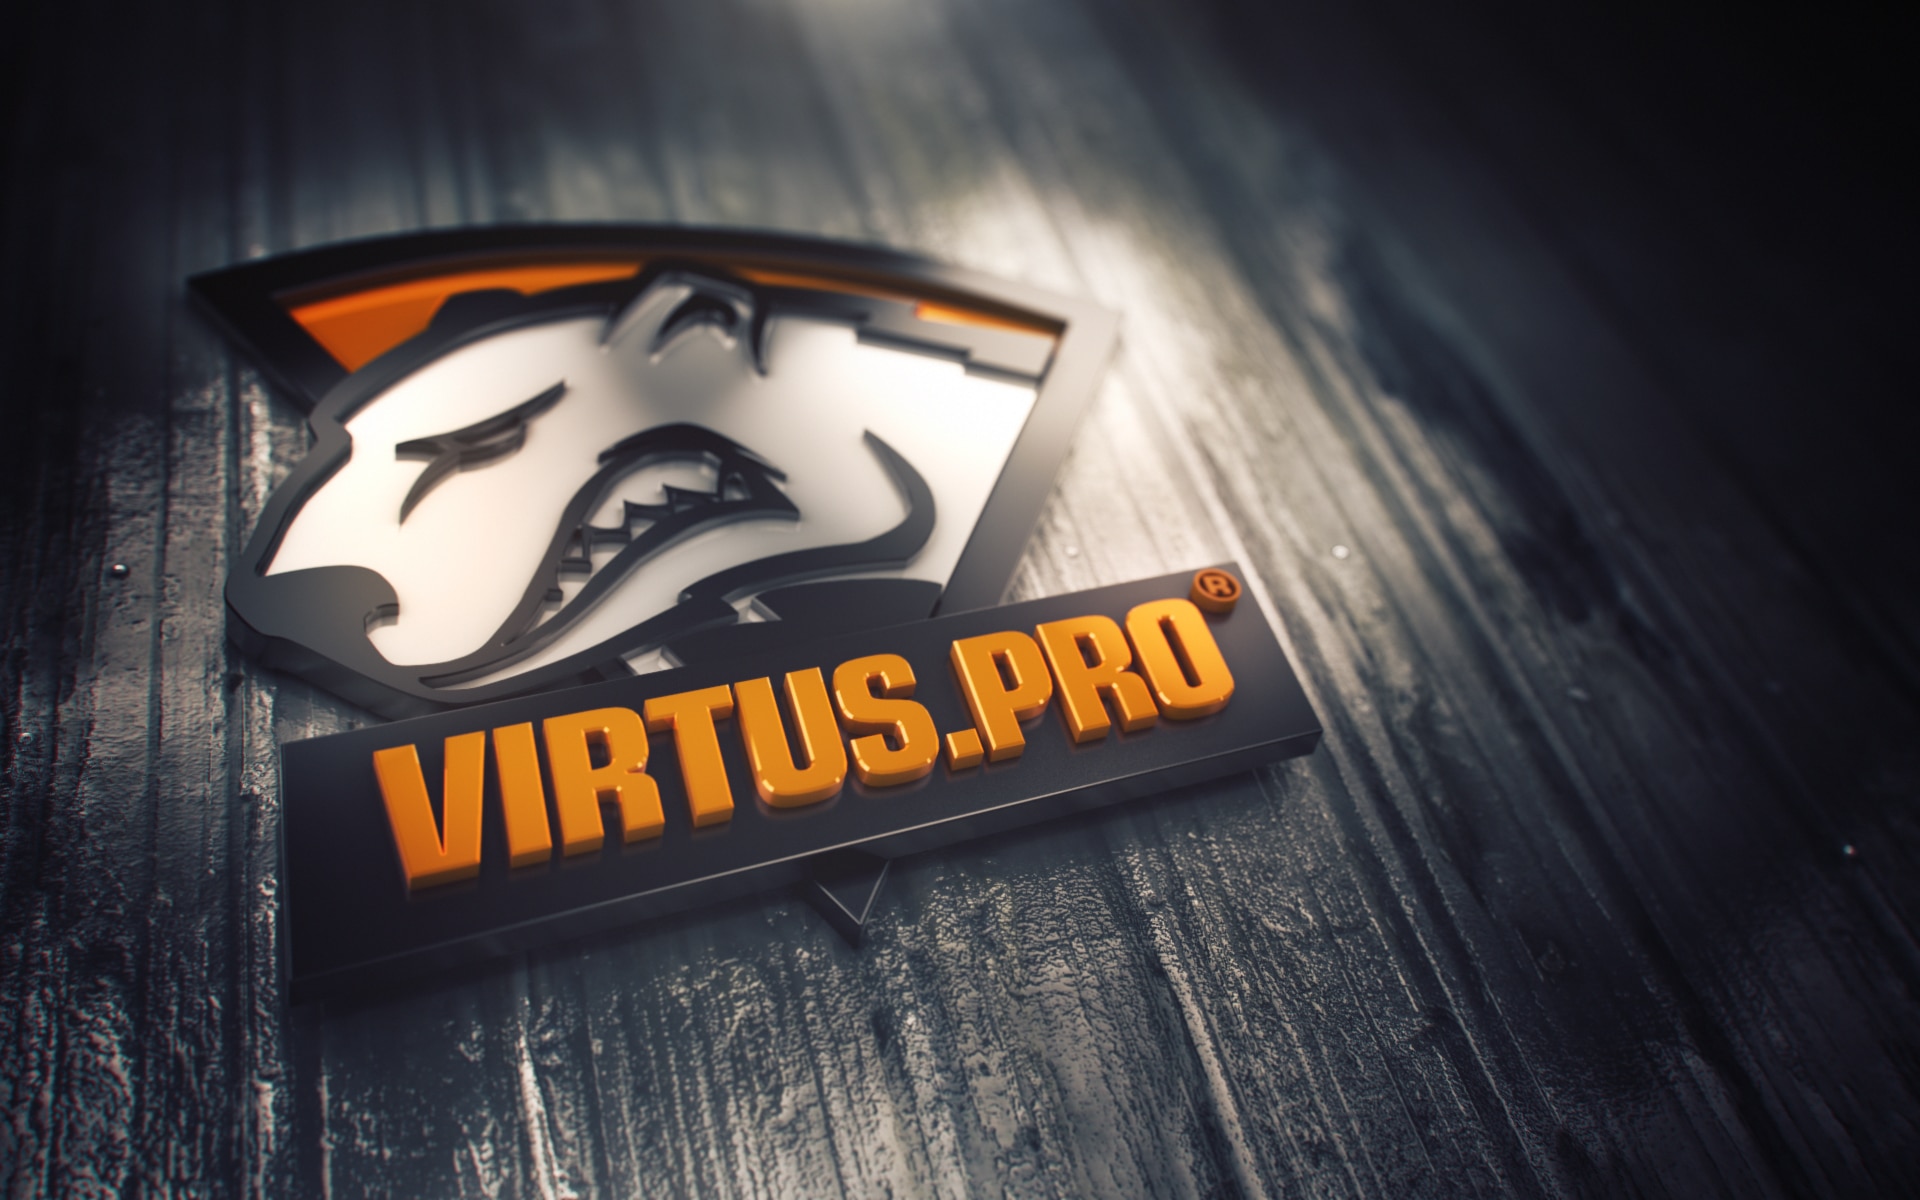 Virtus pro imperial